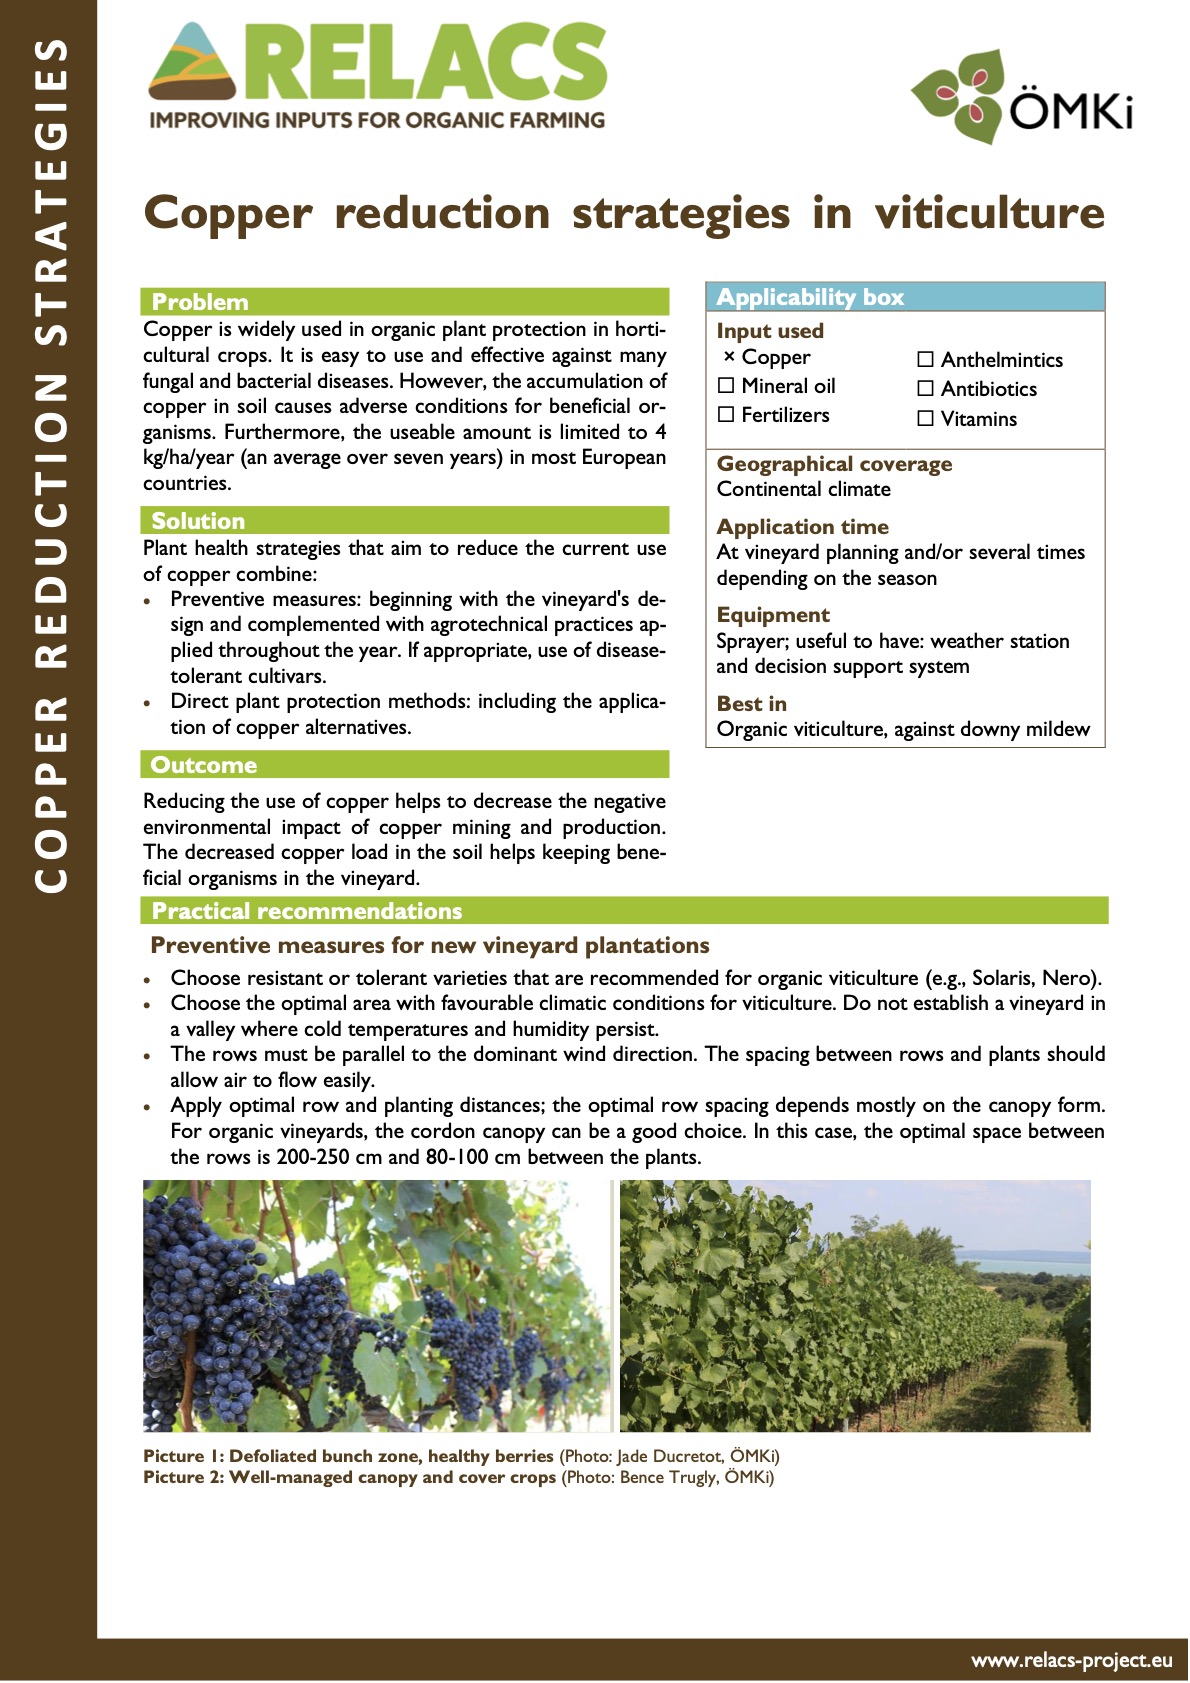 Stratégies de réduction du cuivre en viticulture (RELACS Practice abstract)